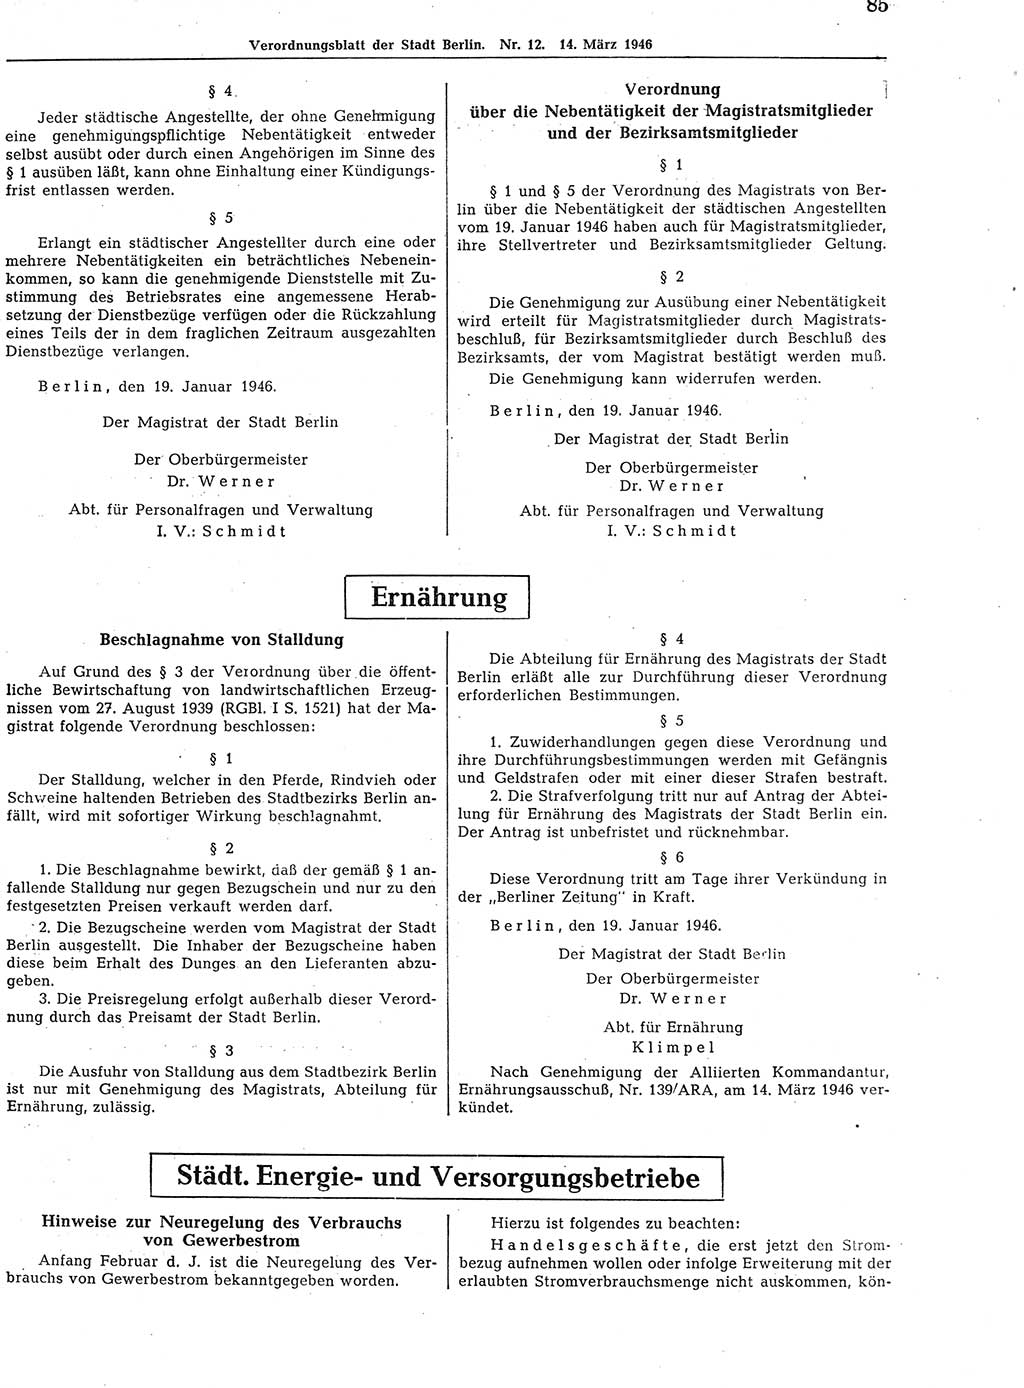 Verordnungsblatt (VOBl.) der Stadt Berlin, für Groß-Berlin 1946, Seite 85 (VOBl. Bln. 1946, S. 85)